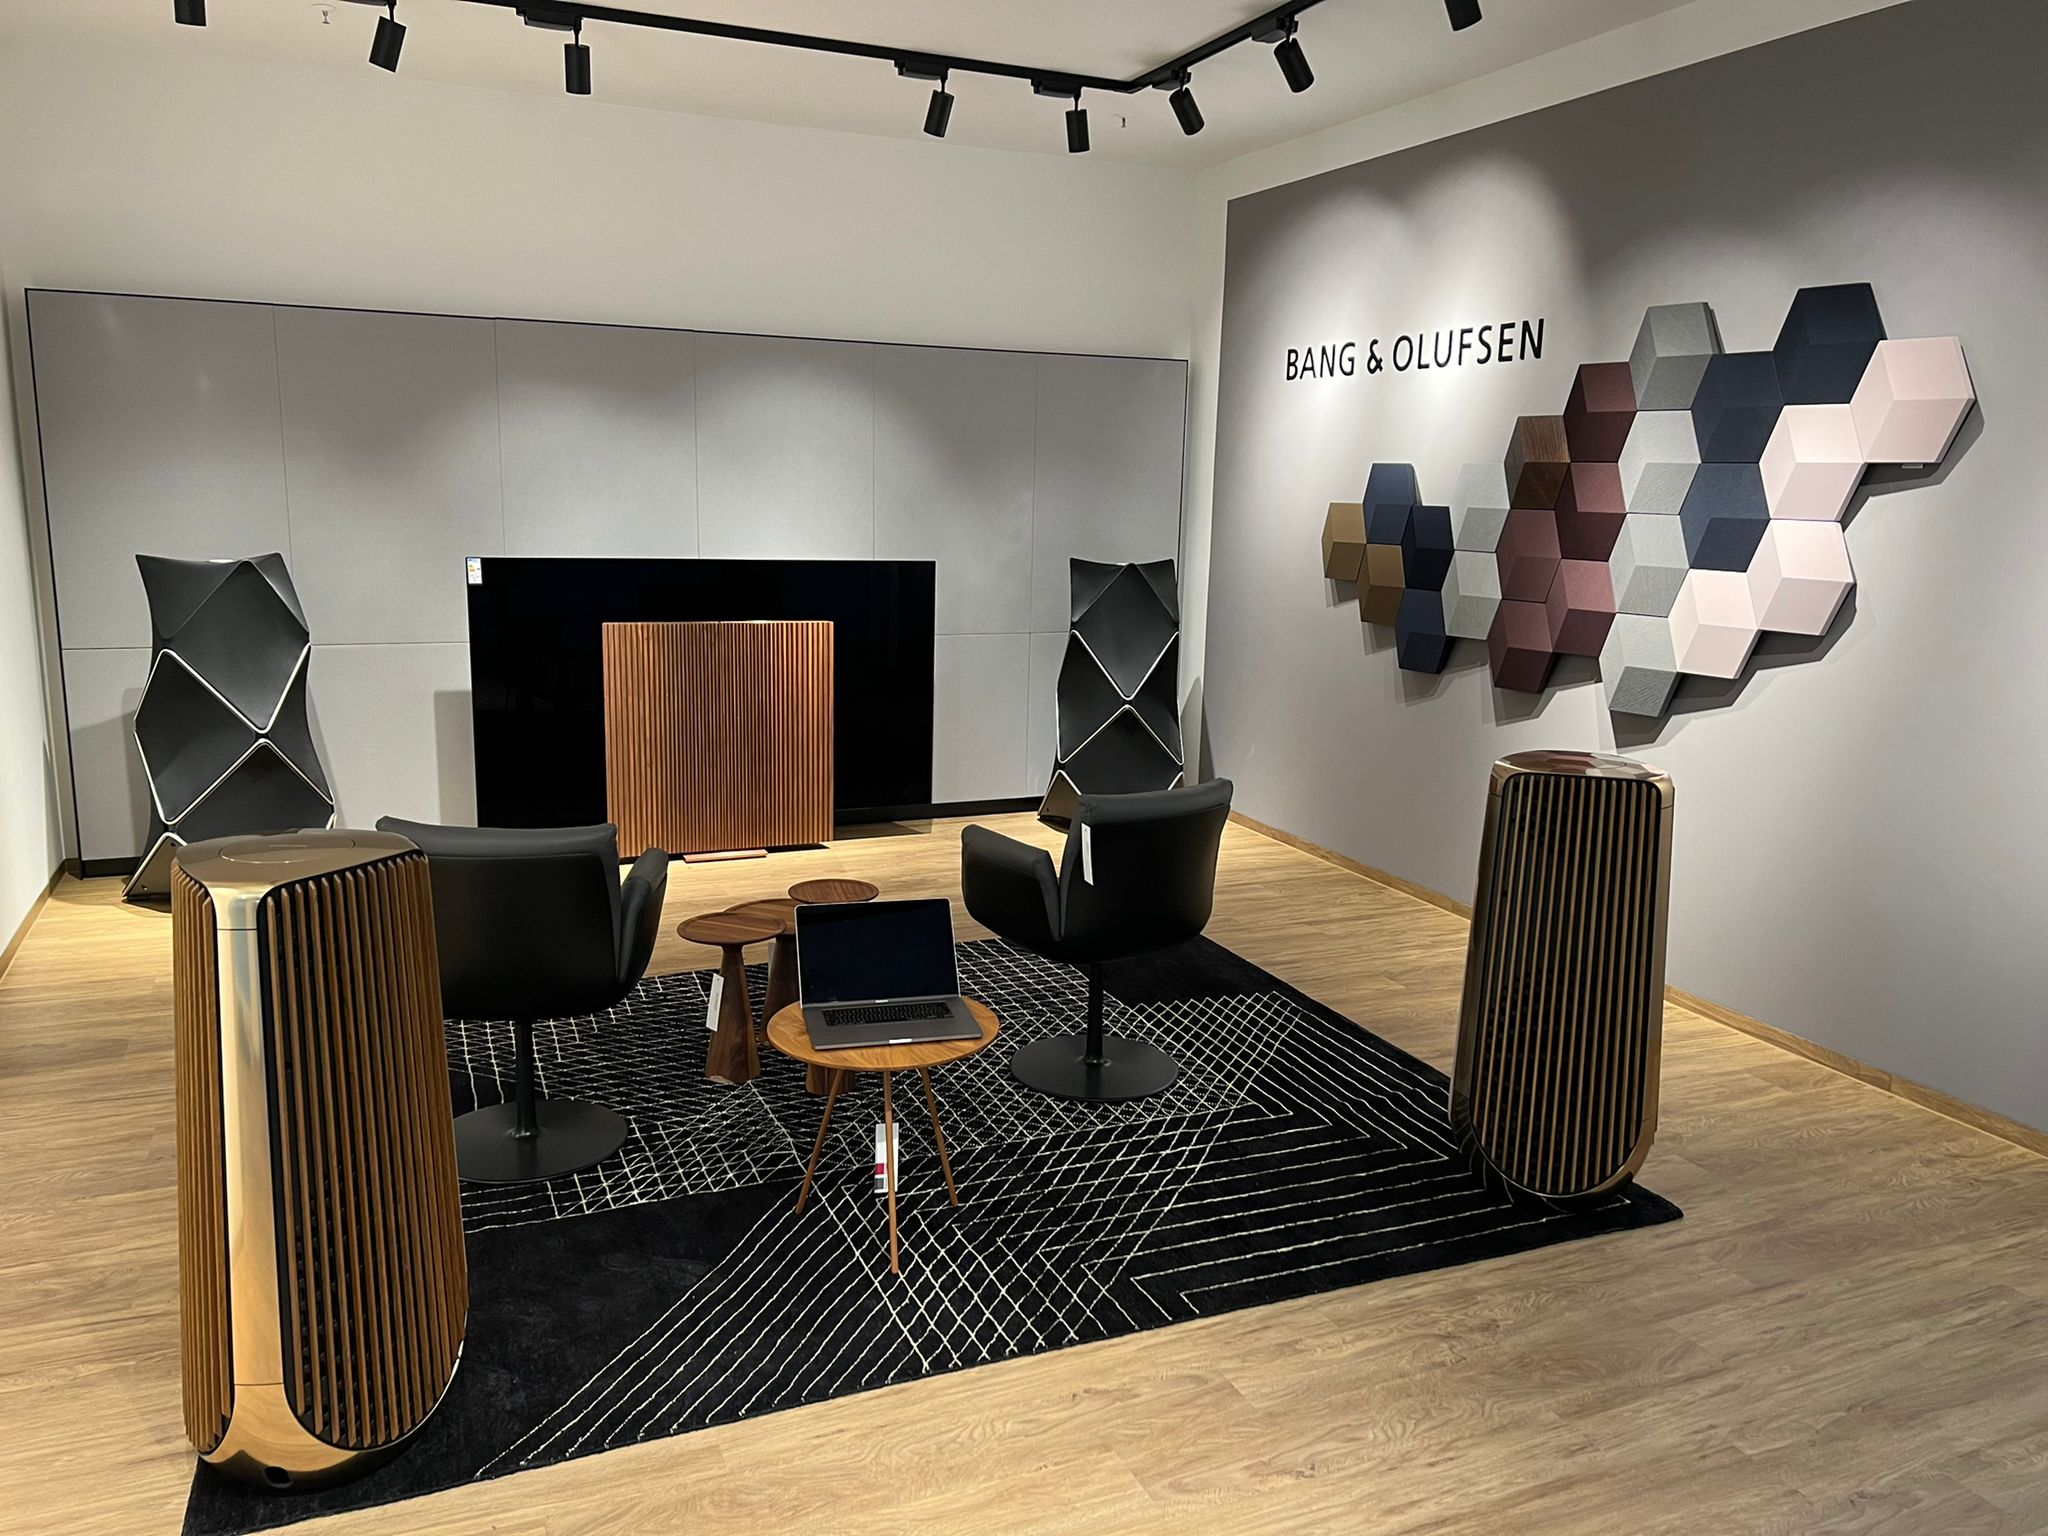 Bang & Olufsen : Luxury home sound systems in Essen